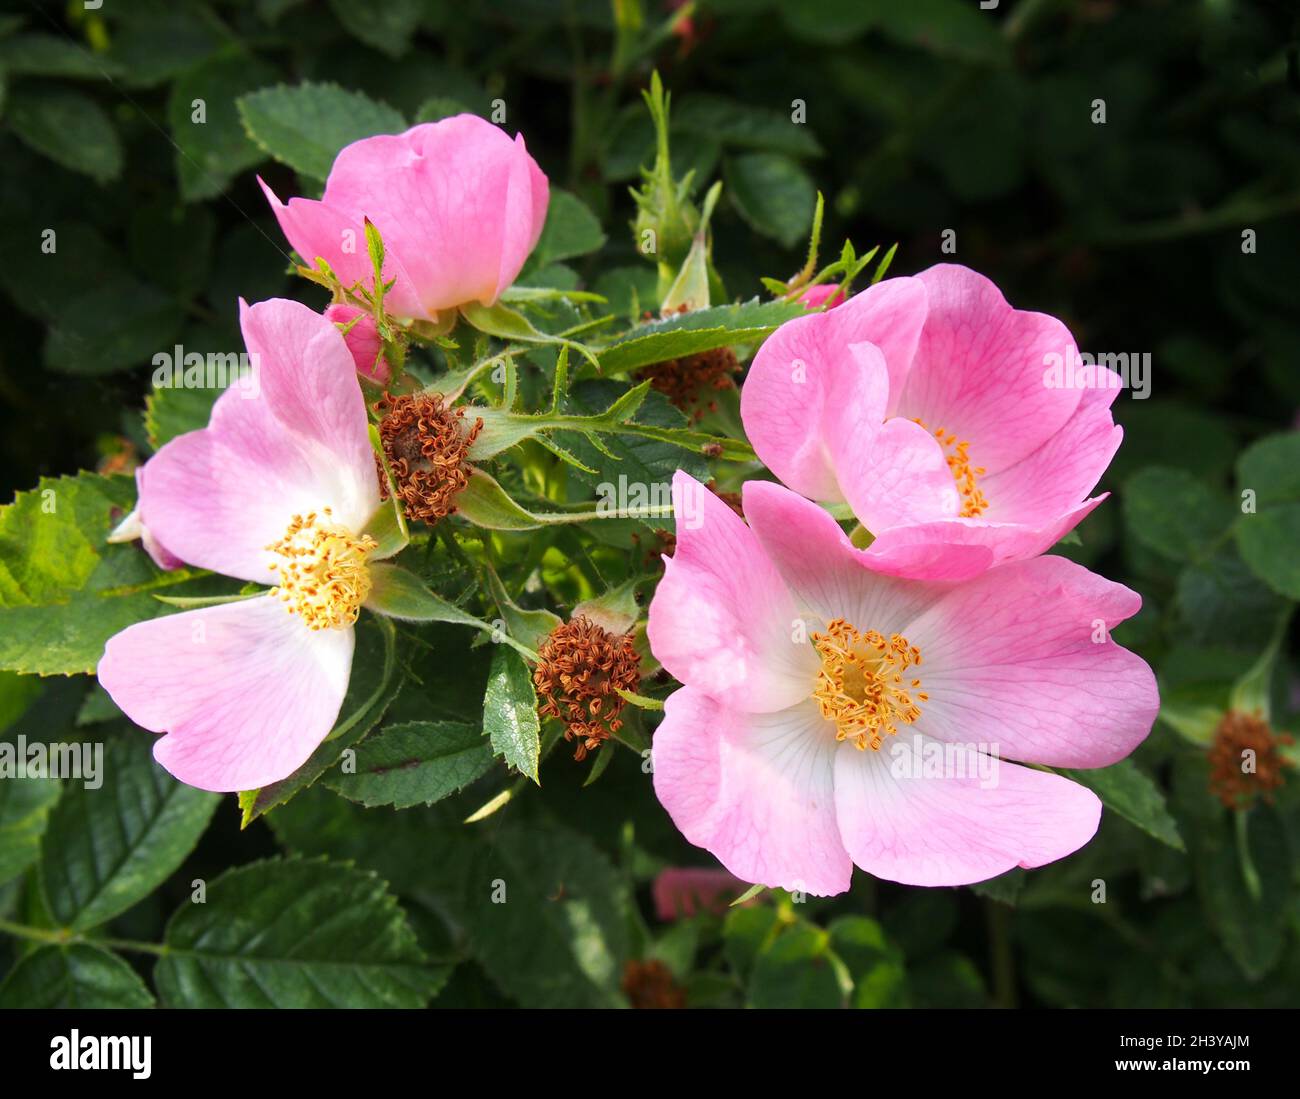 Gros plan de fleurs roses sauvages sur un fond de feuillage vert foncé Banque D'Images